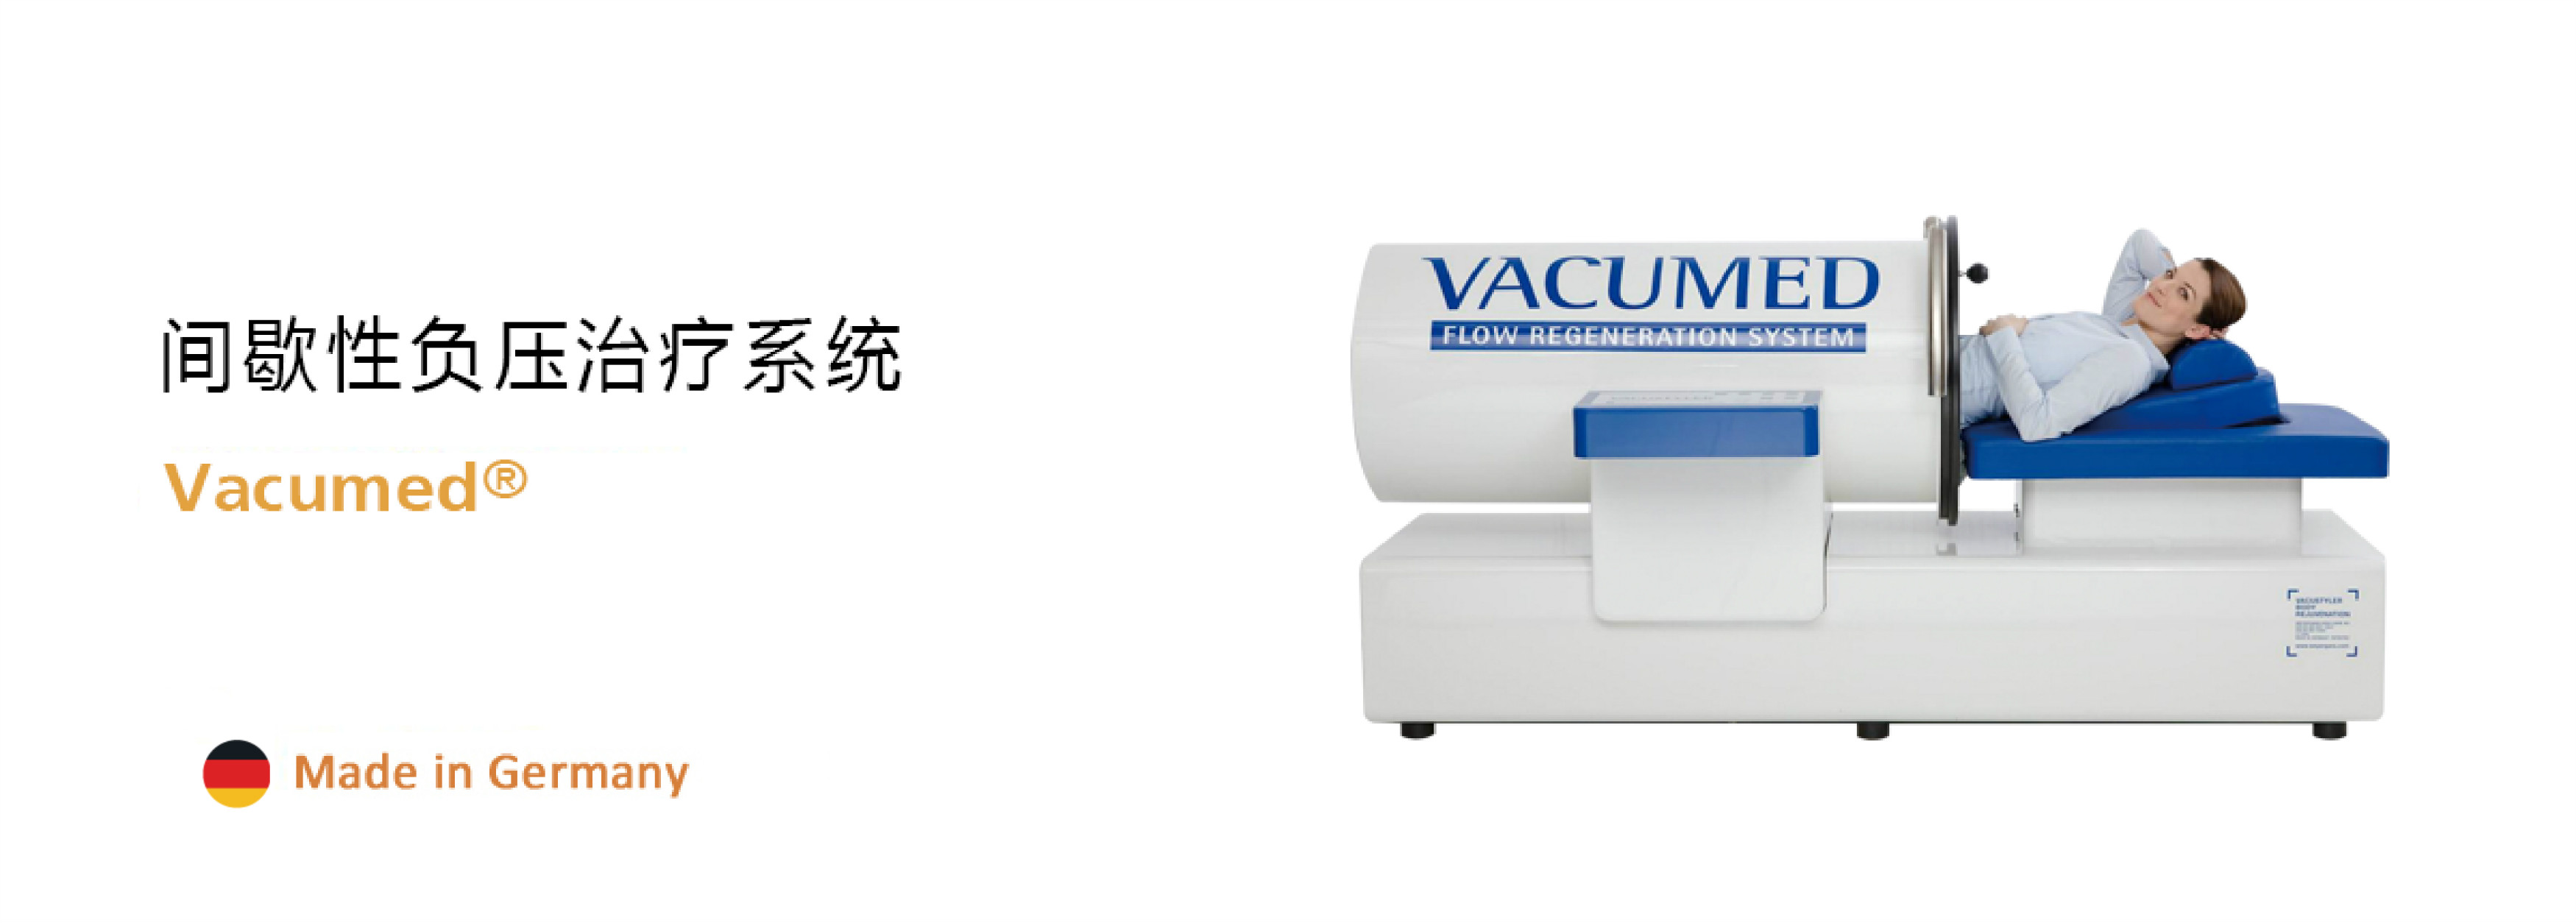 VACUmed负压治疗仪-武汉嘉会信和医疗技术有限公司